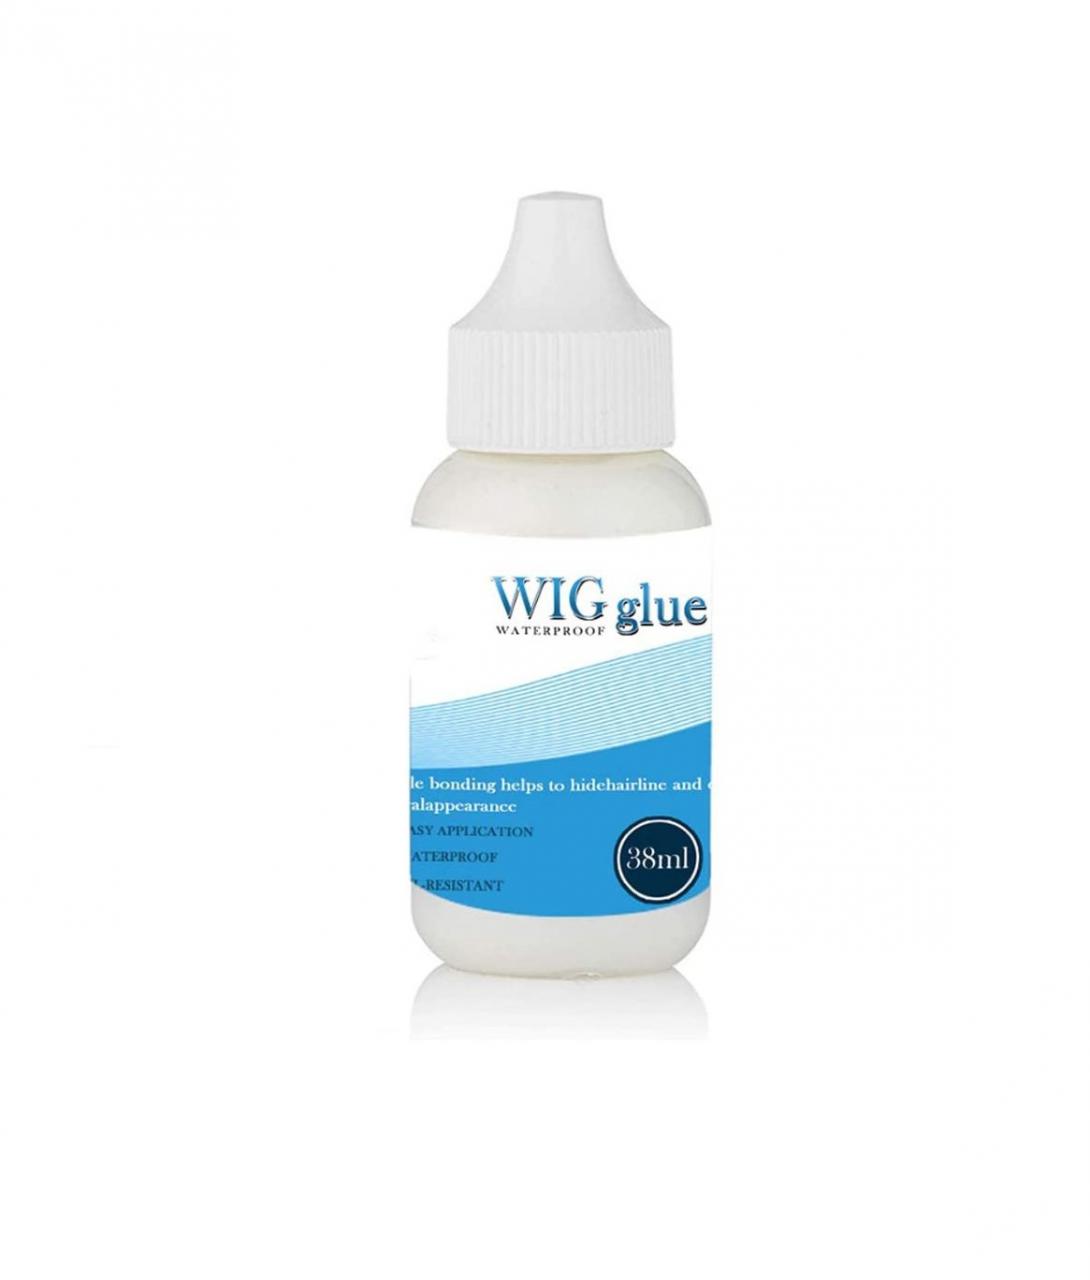 Wig glue